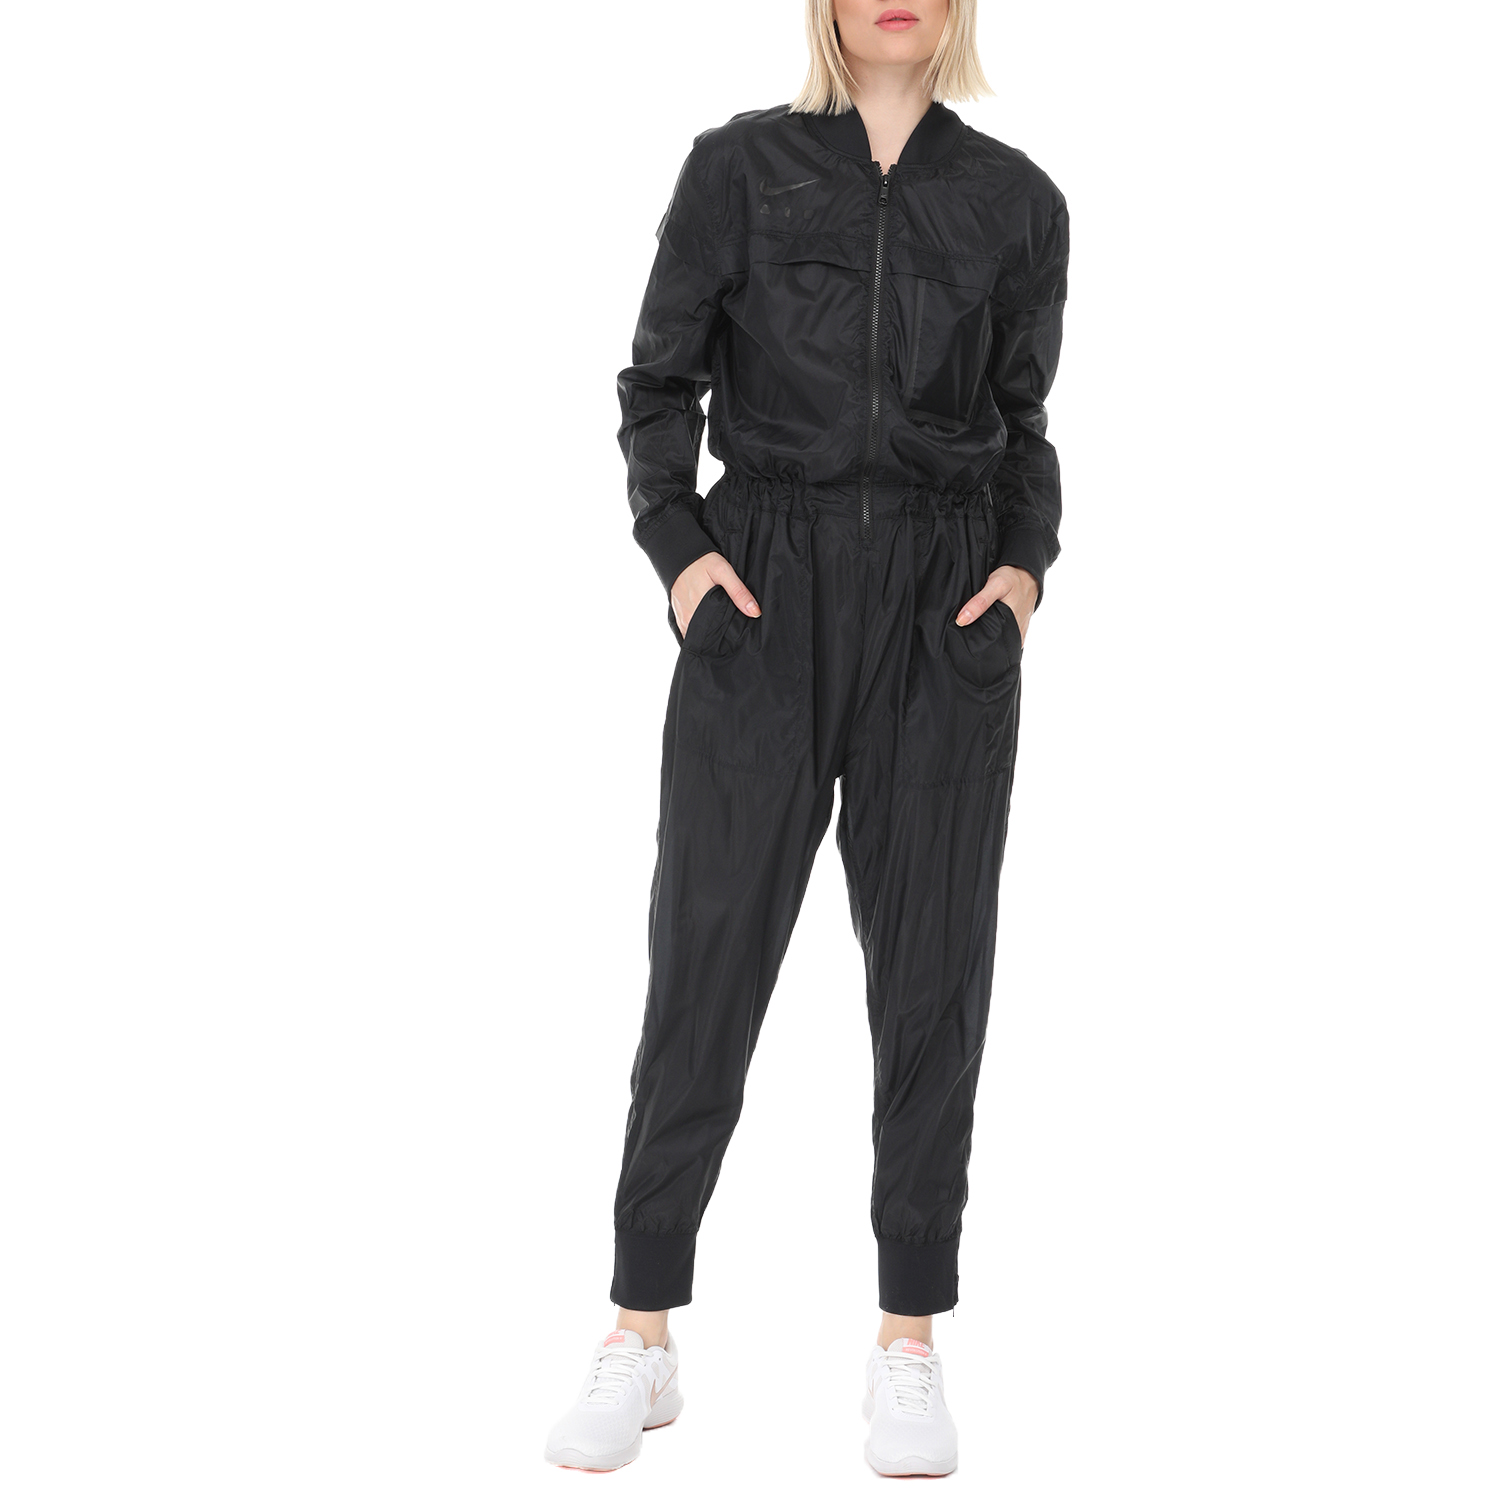 Γυναικεία/Ρούχα/Αθλητικά/Φόρμες NIKE - Γυναικεία ολόσωμη φόρμα Nike NSW JUMPSUIT FTR AIR μαύρη